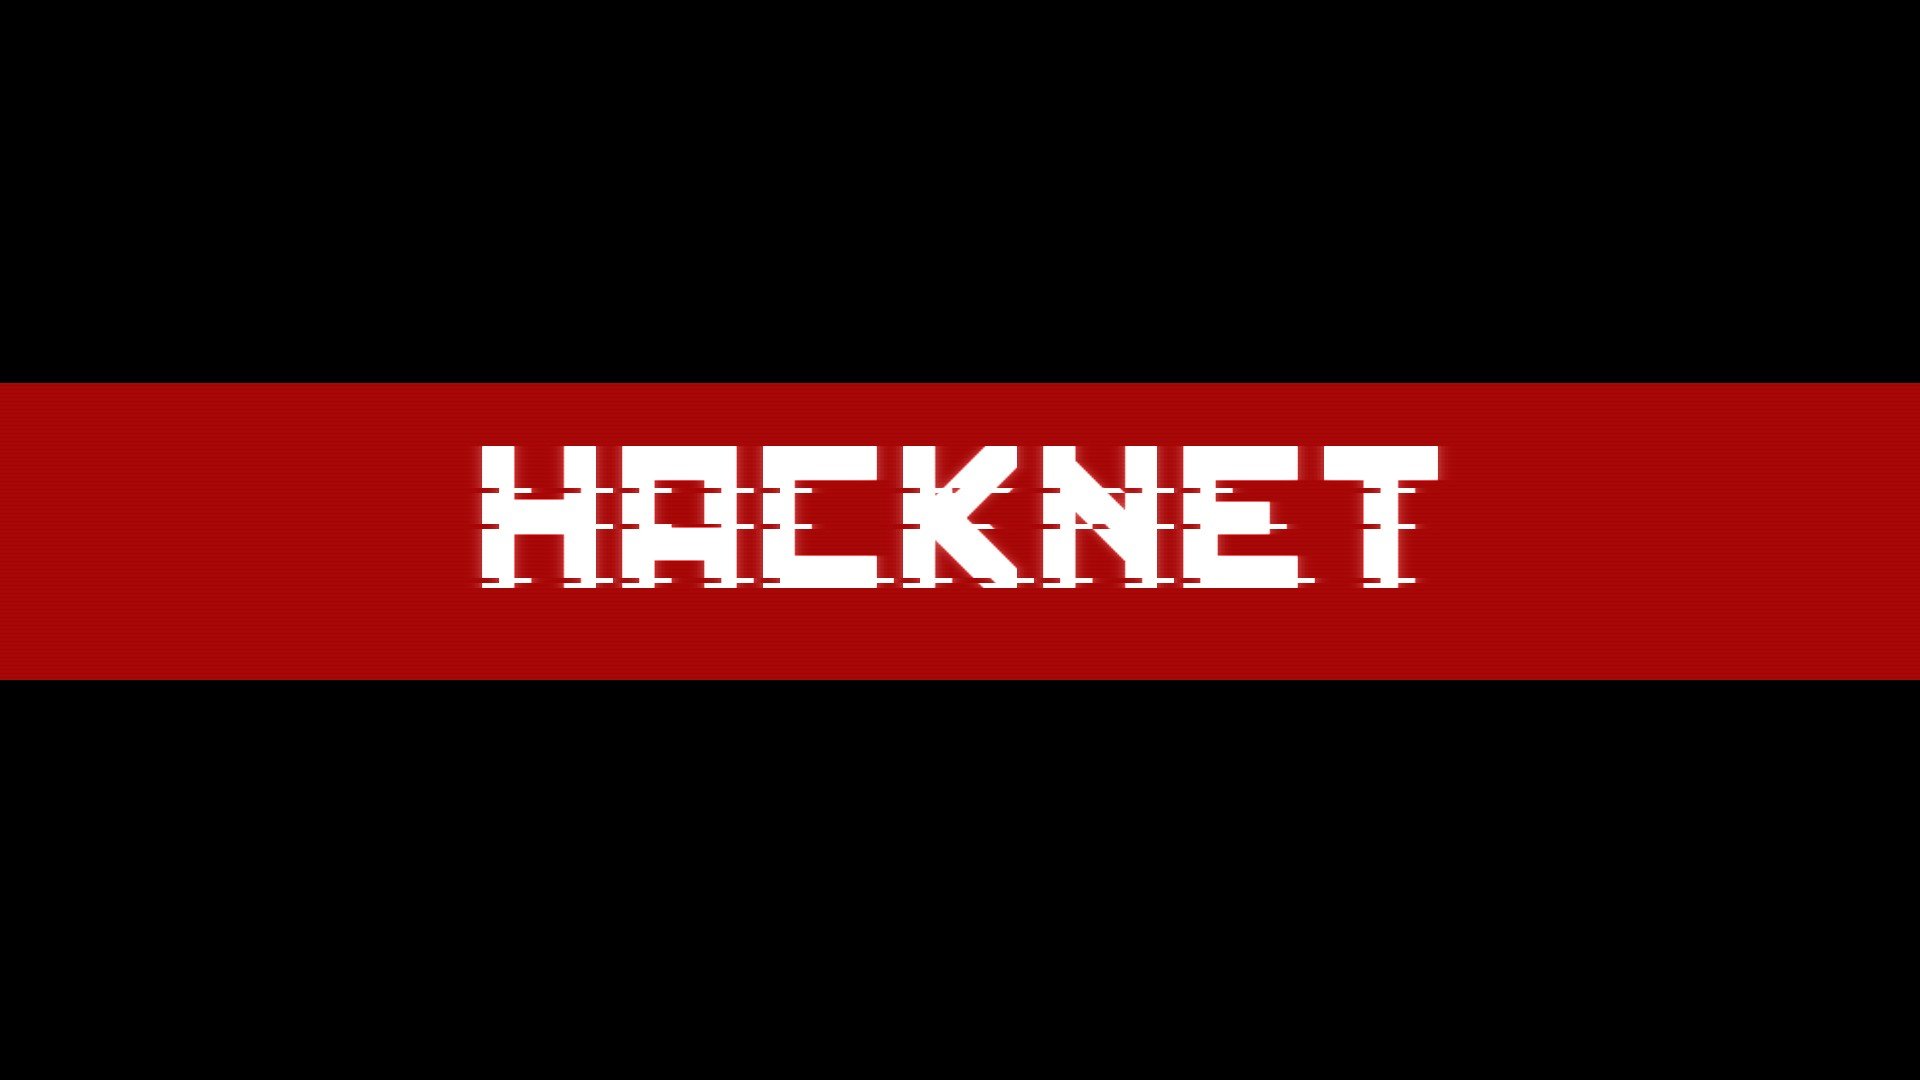 Hacknet, Uplink Wallpaper